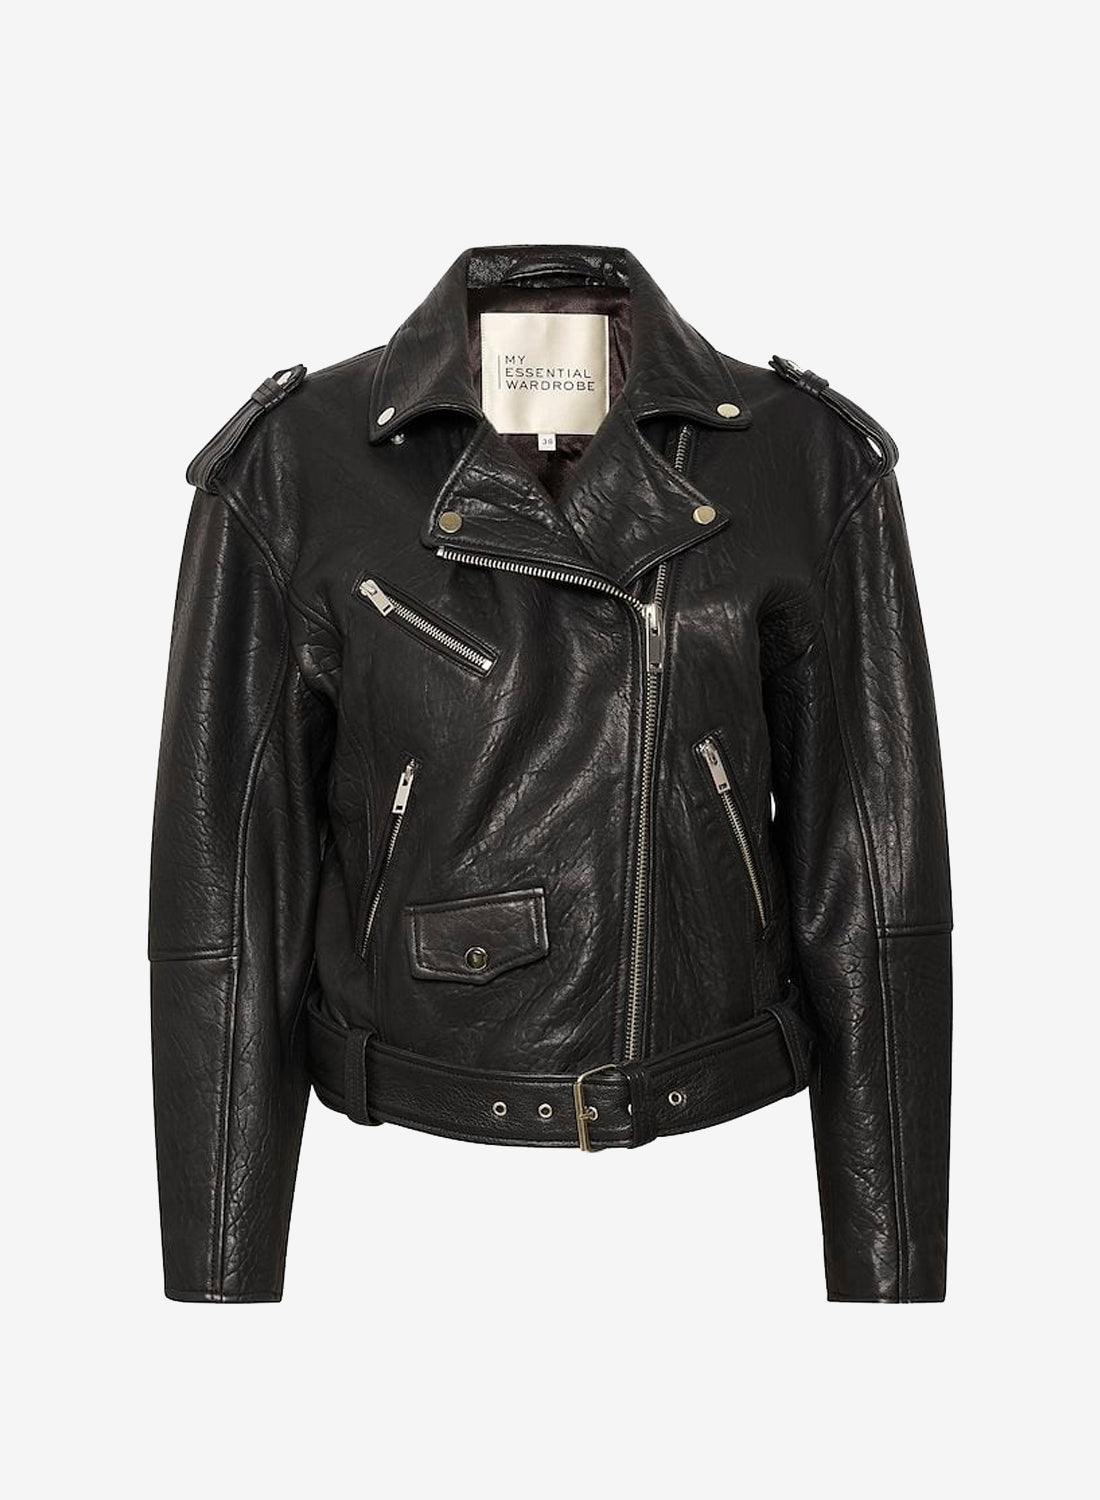 Se My Essential Wardrobe GiloMW Leather Jacket Black hos Number Nine